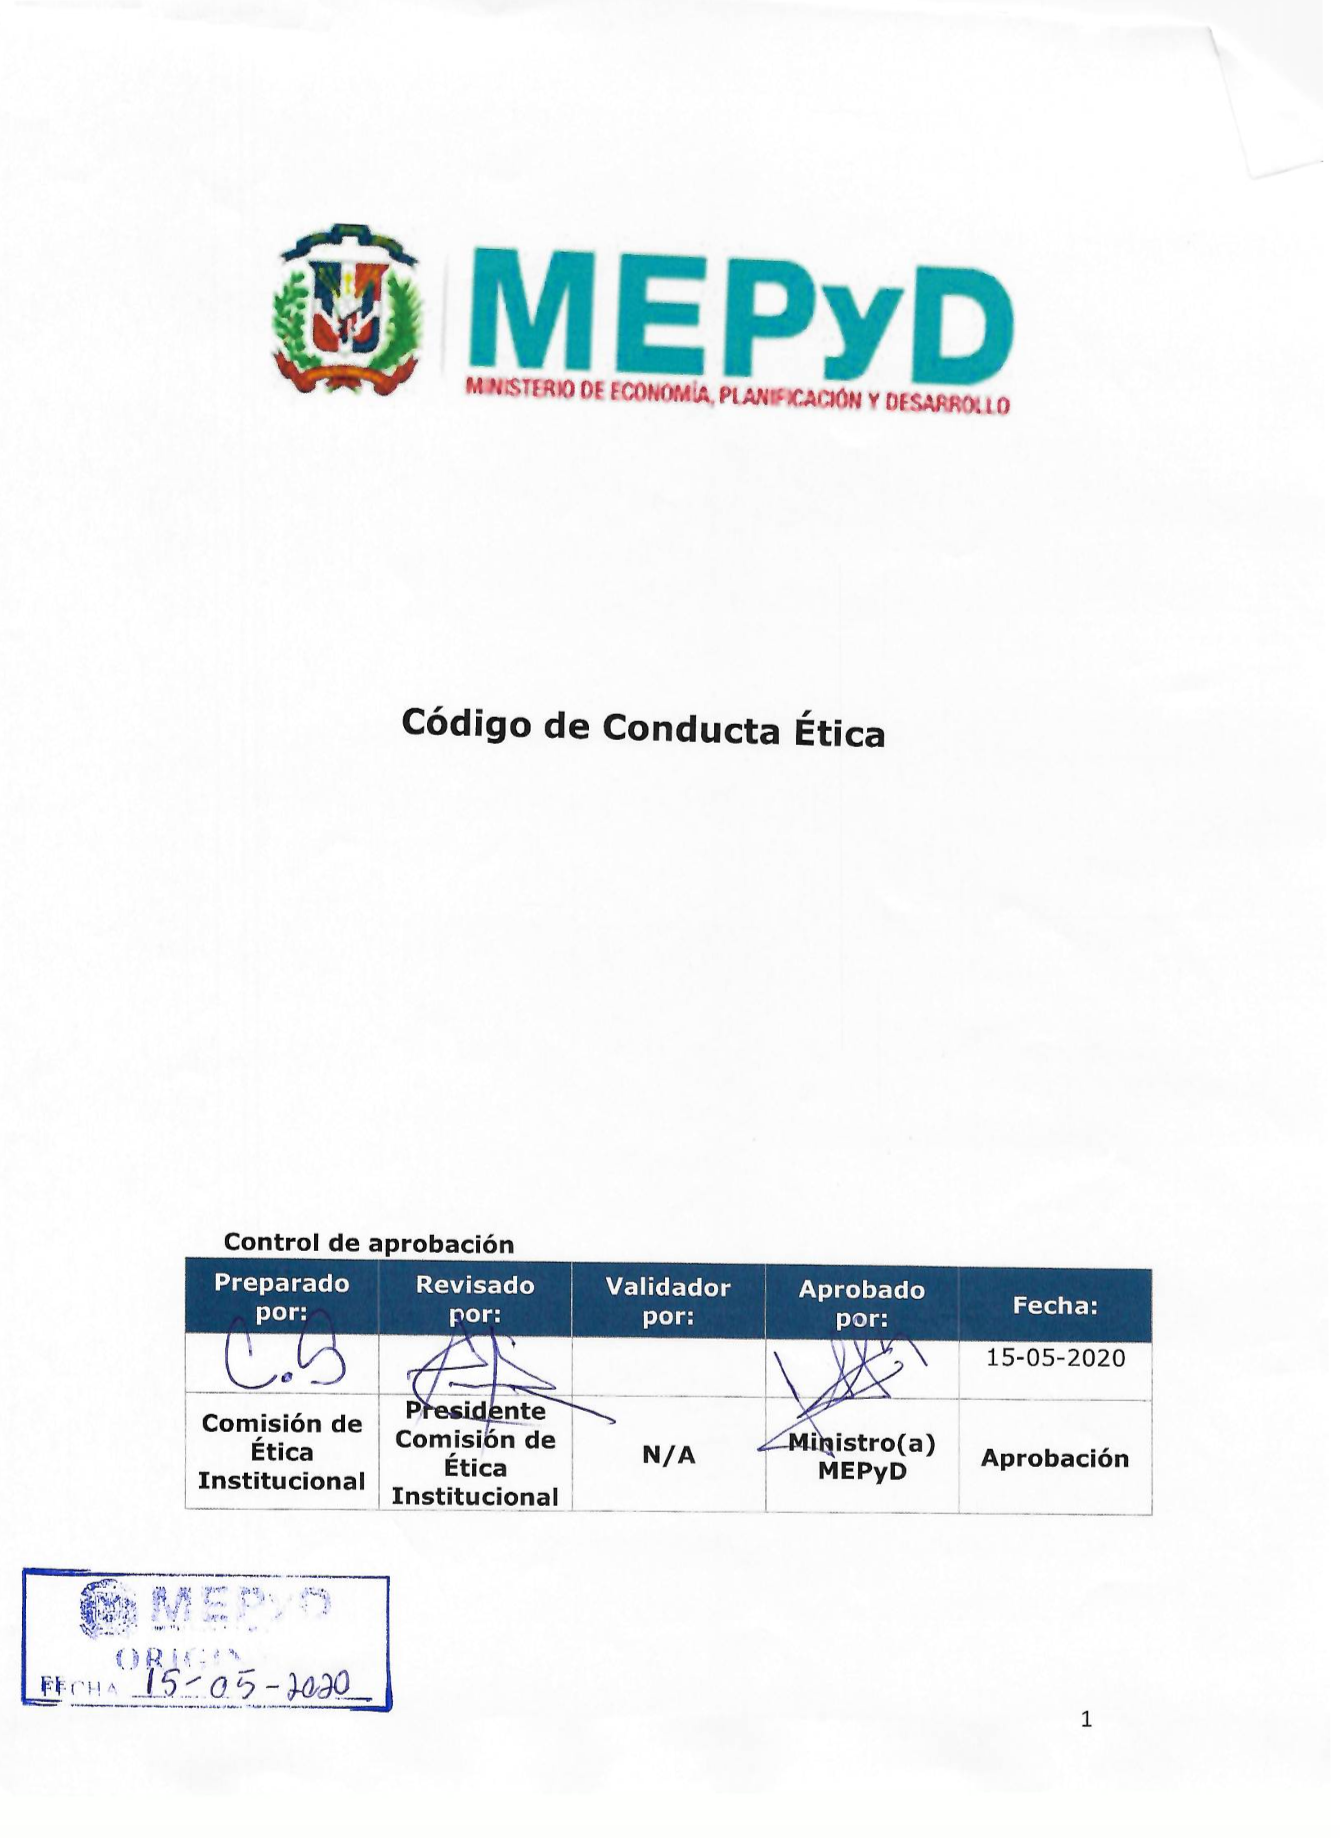 Código de Conducta Ética del MEPyD